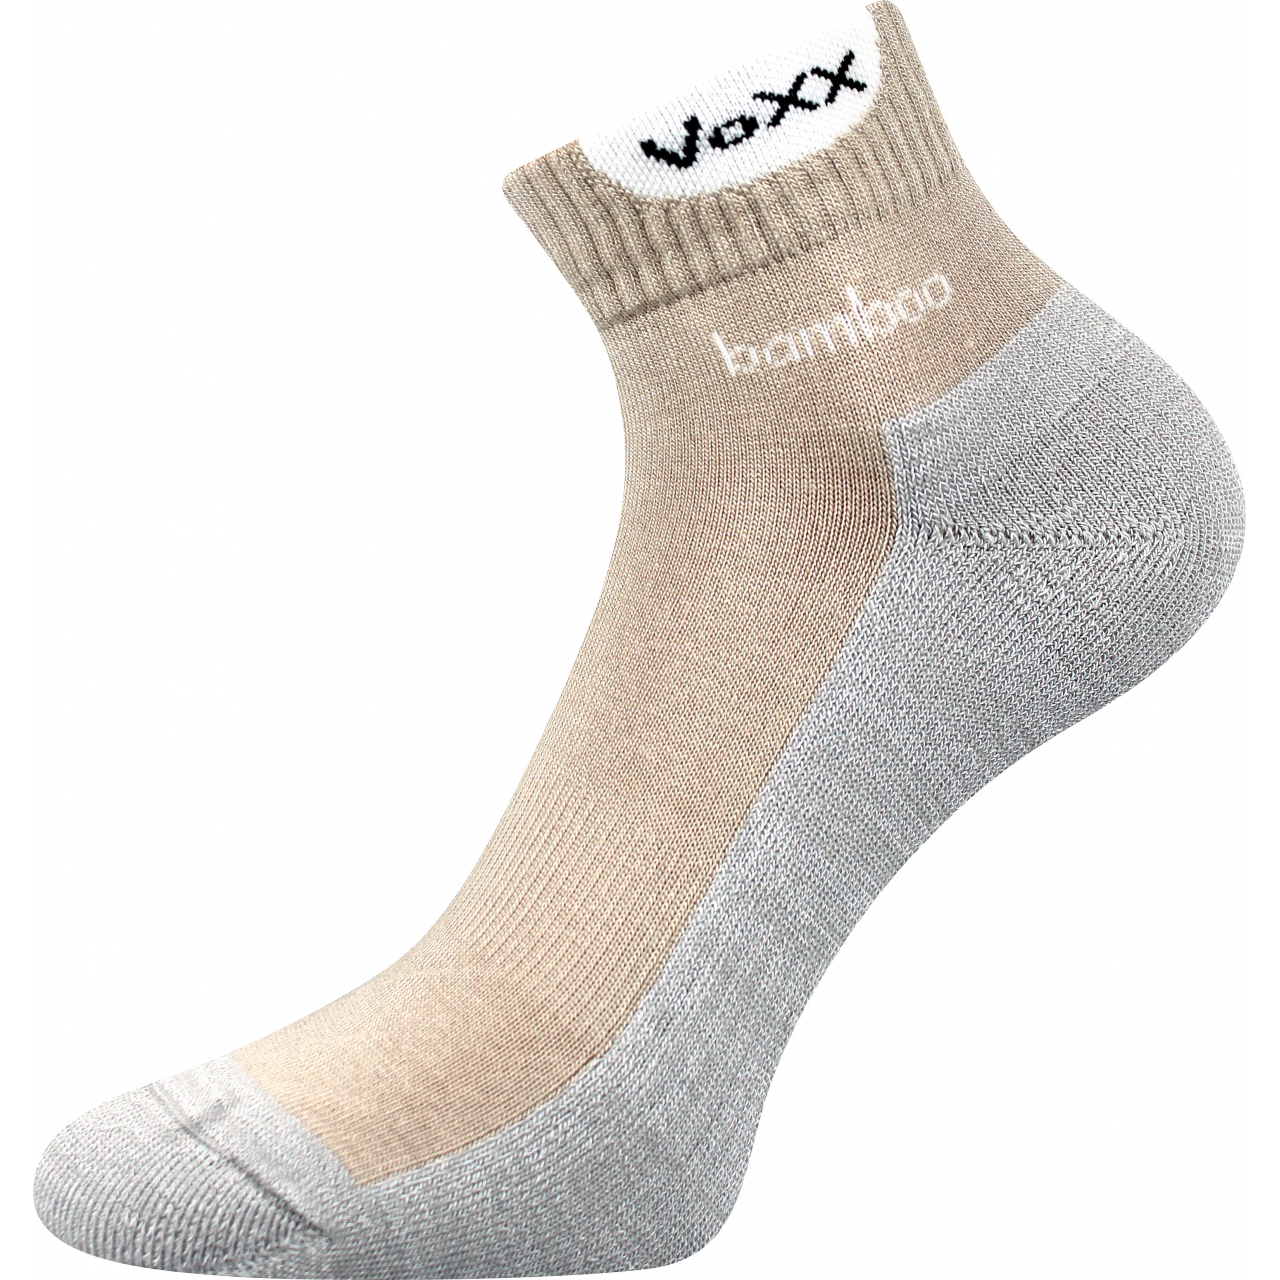 Ponožky sportovní Voxx Brooke - béžové-šedé, 43-46